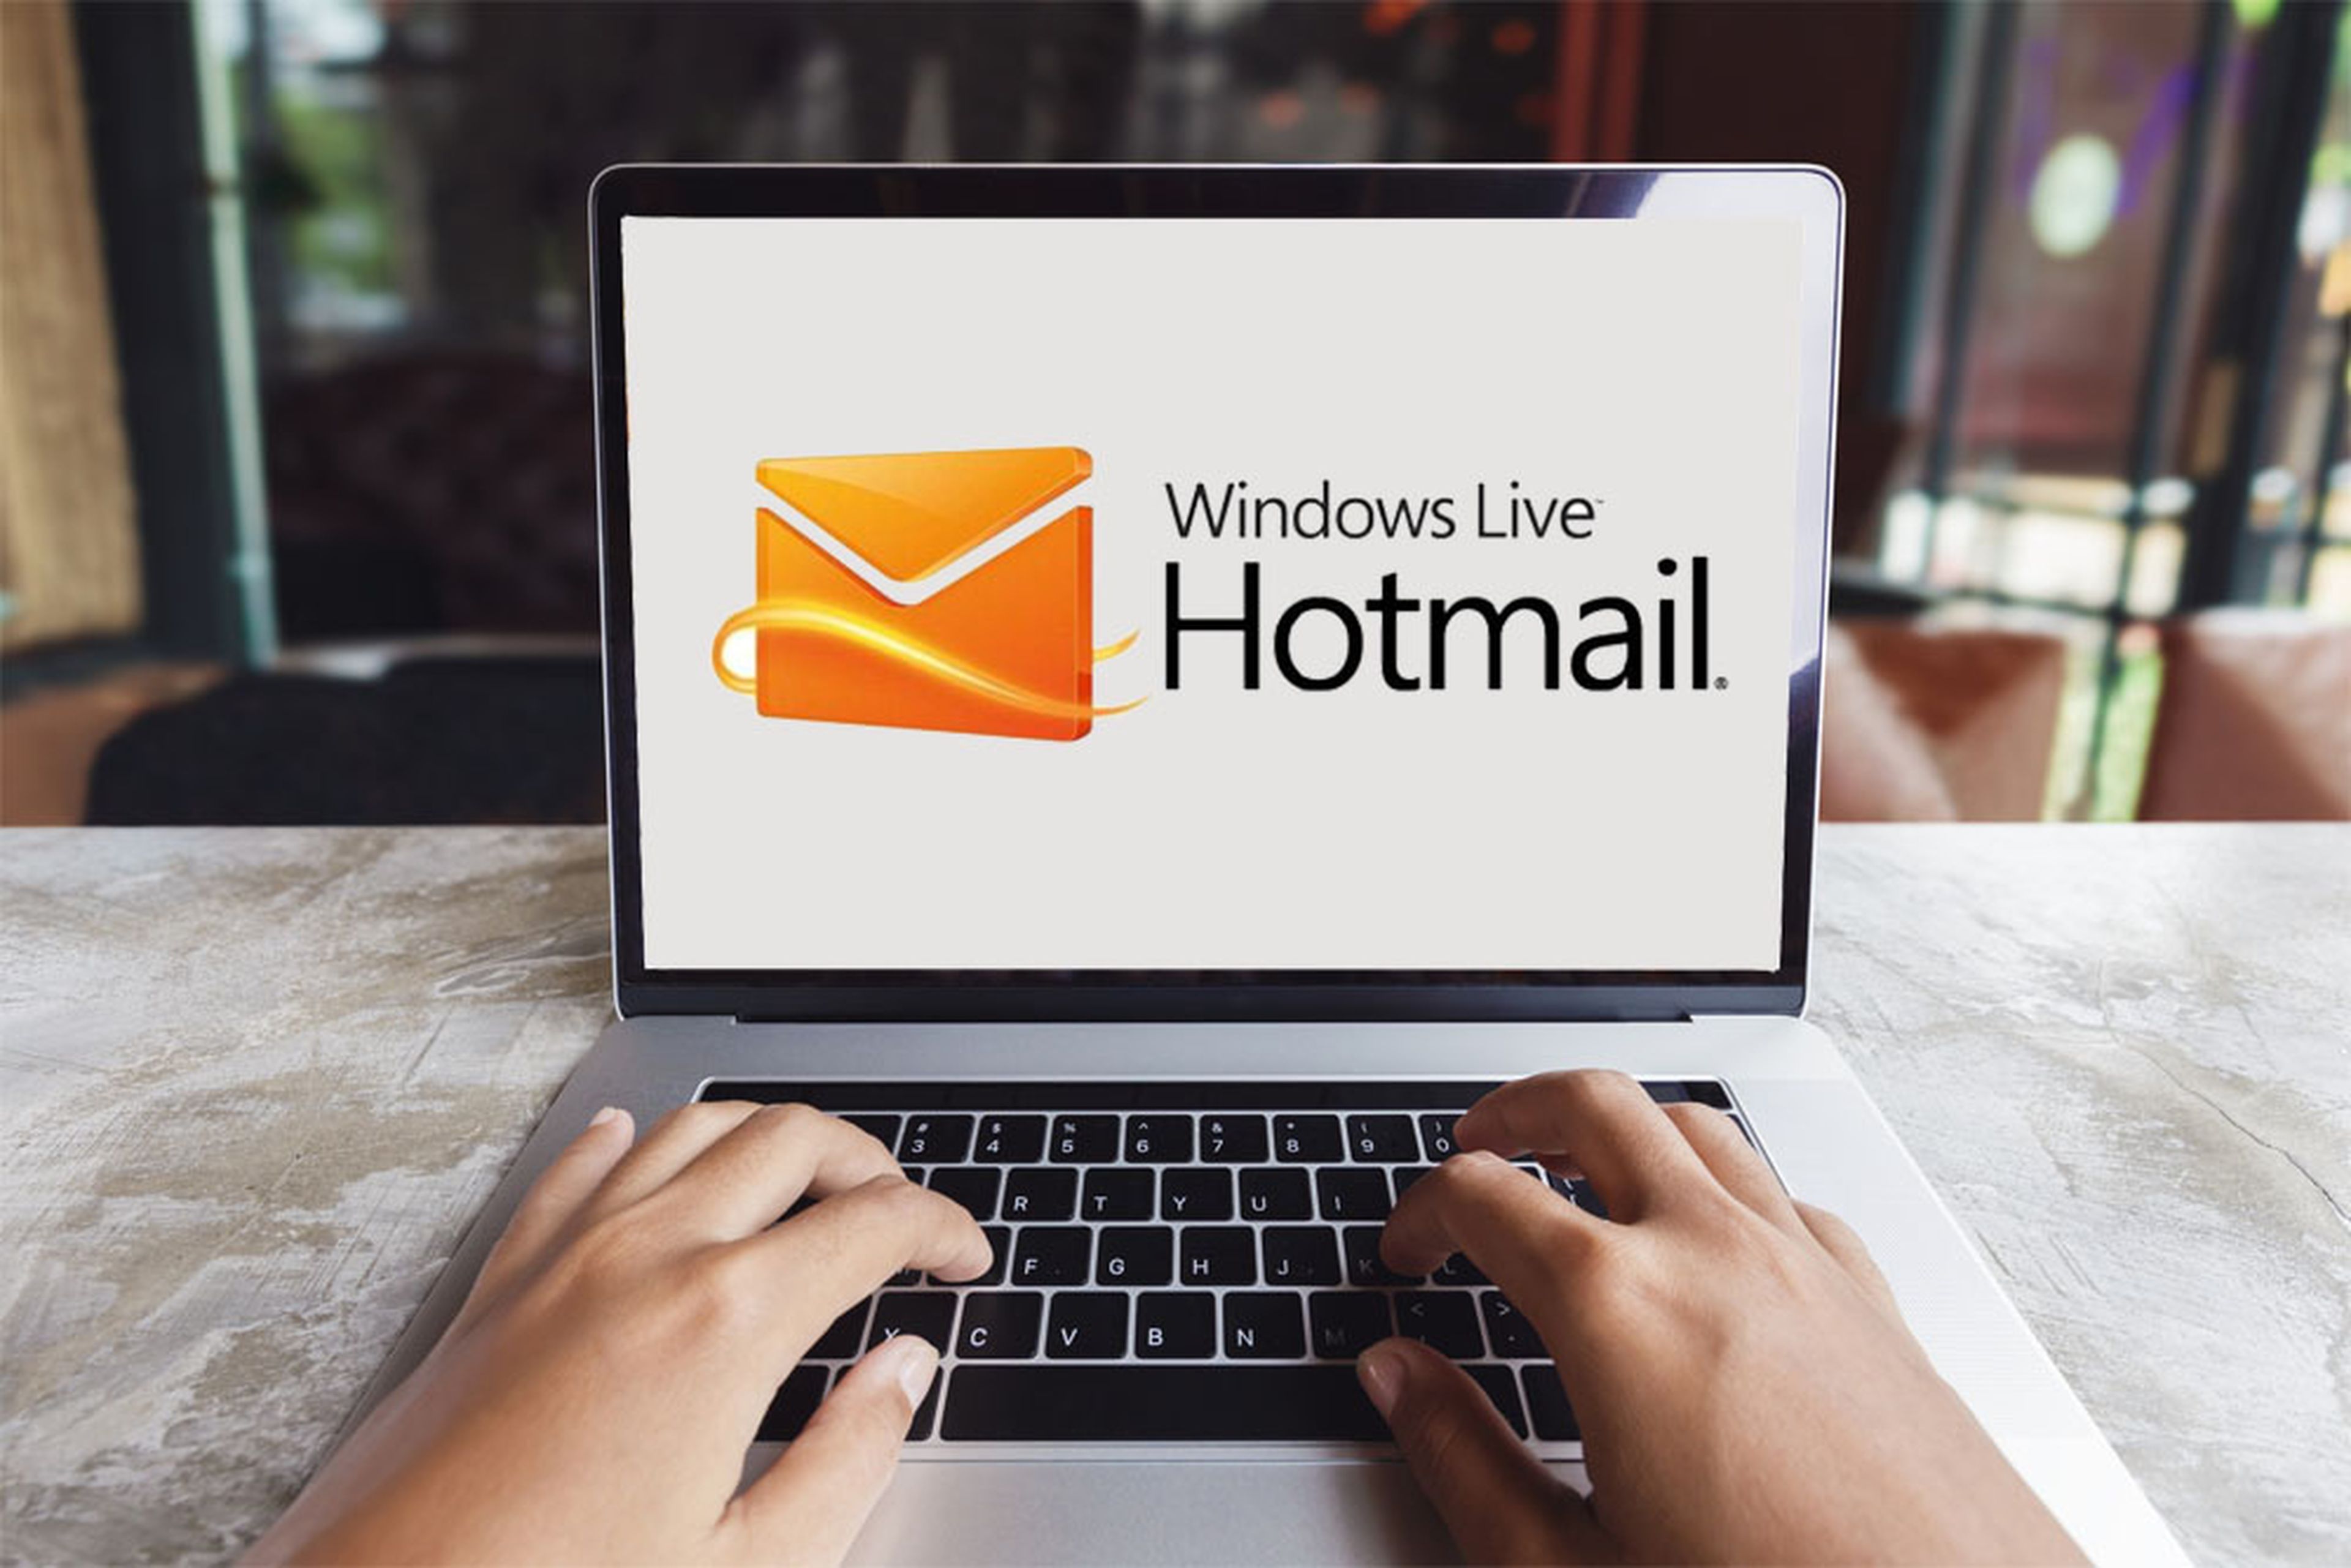 Cómo iniciar sesión en Hotmail